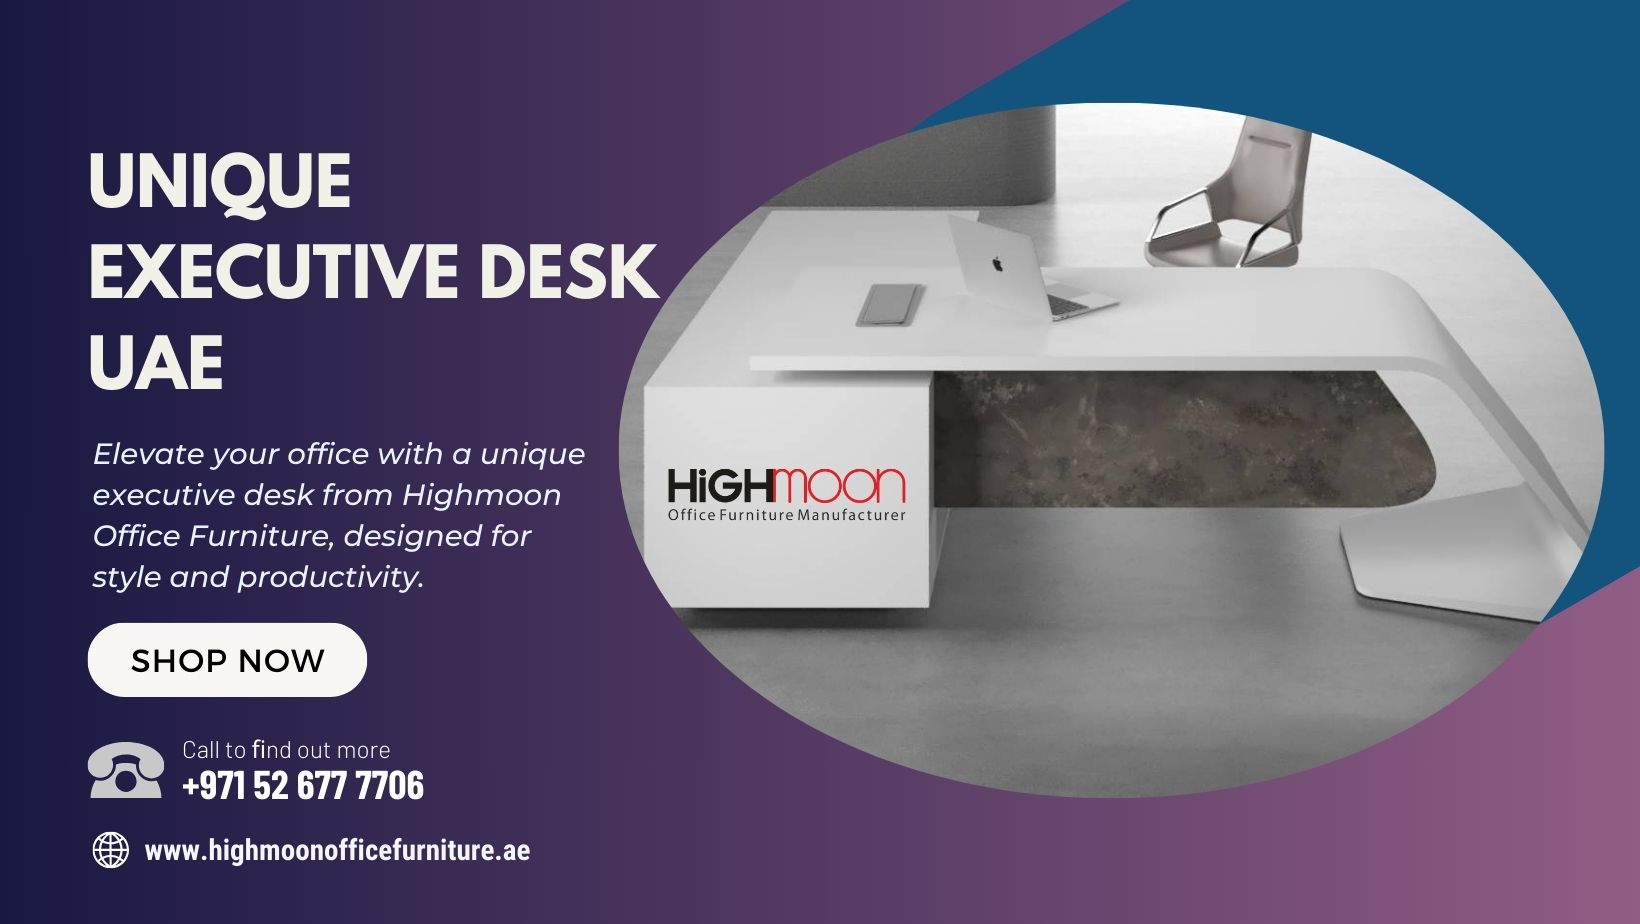 Unique Executive Office Furniture in UAE